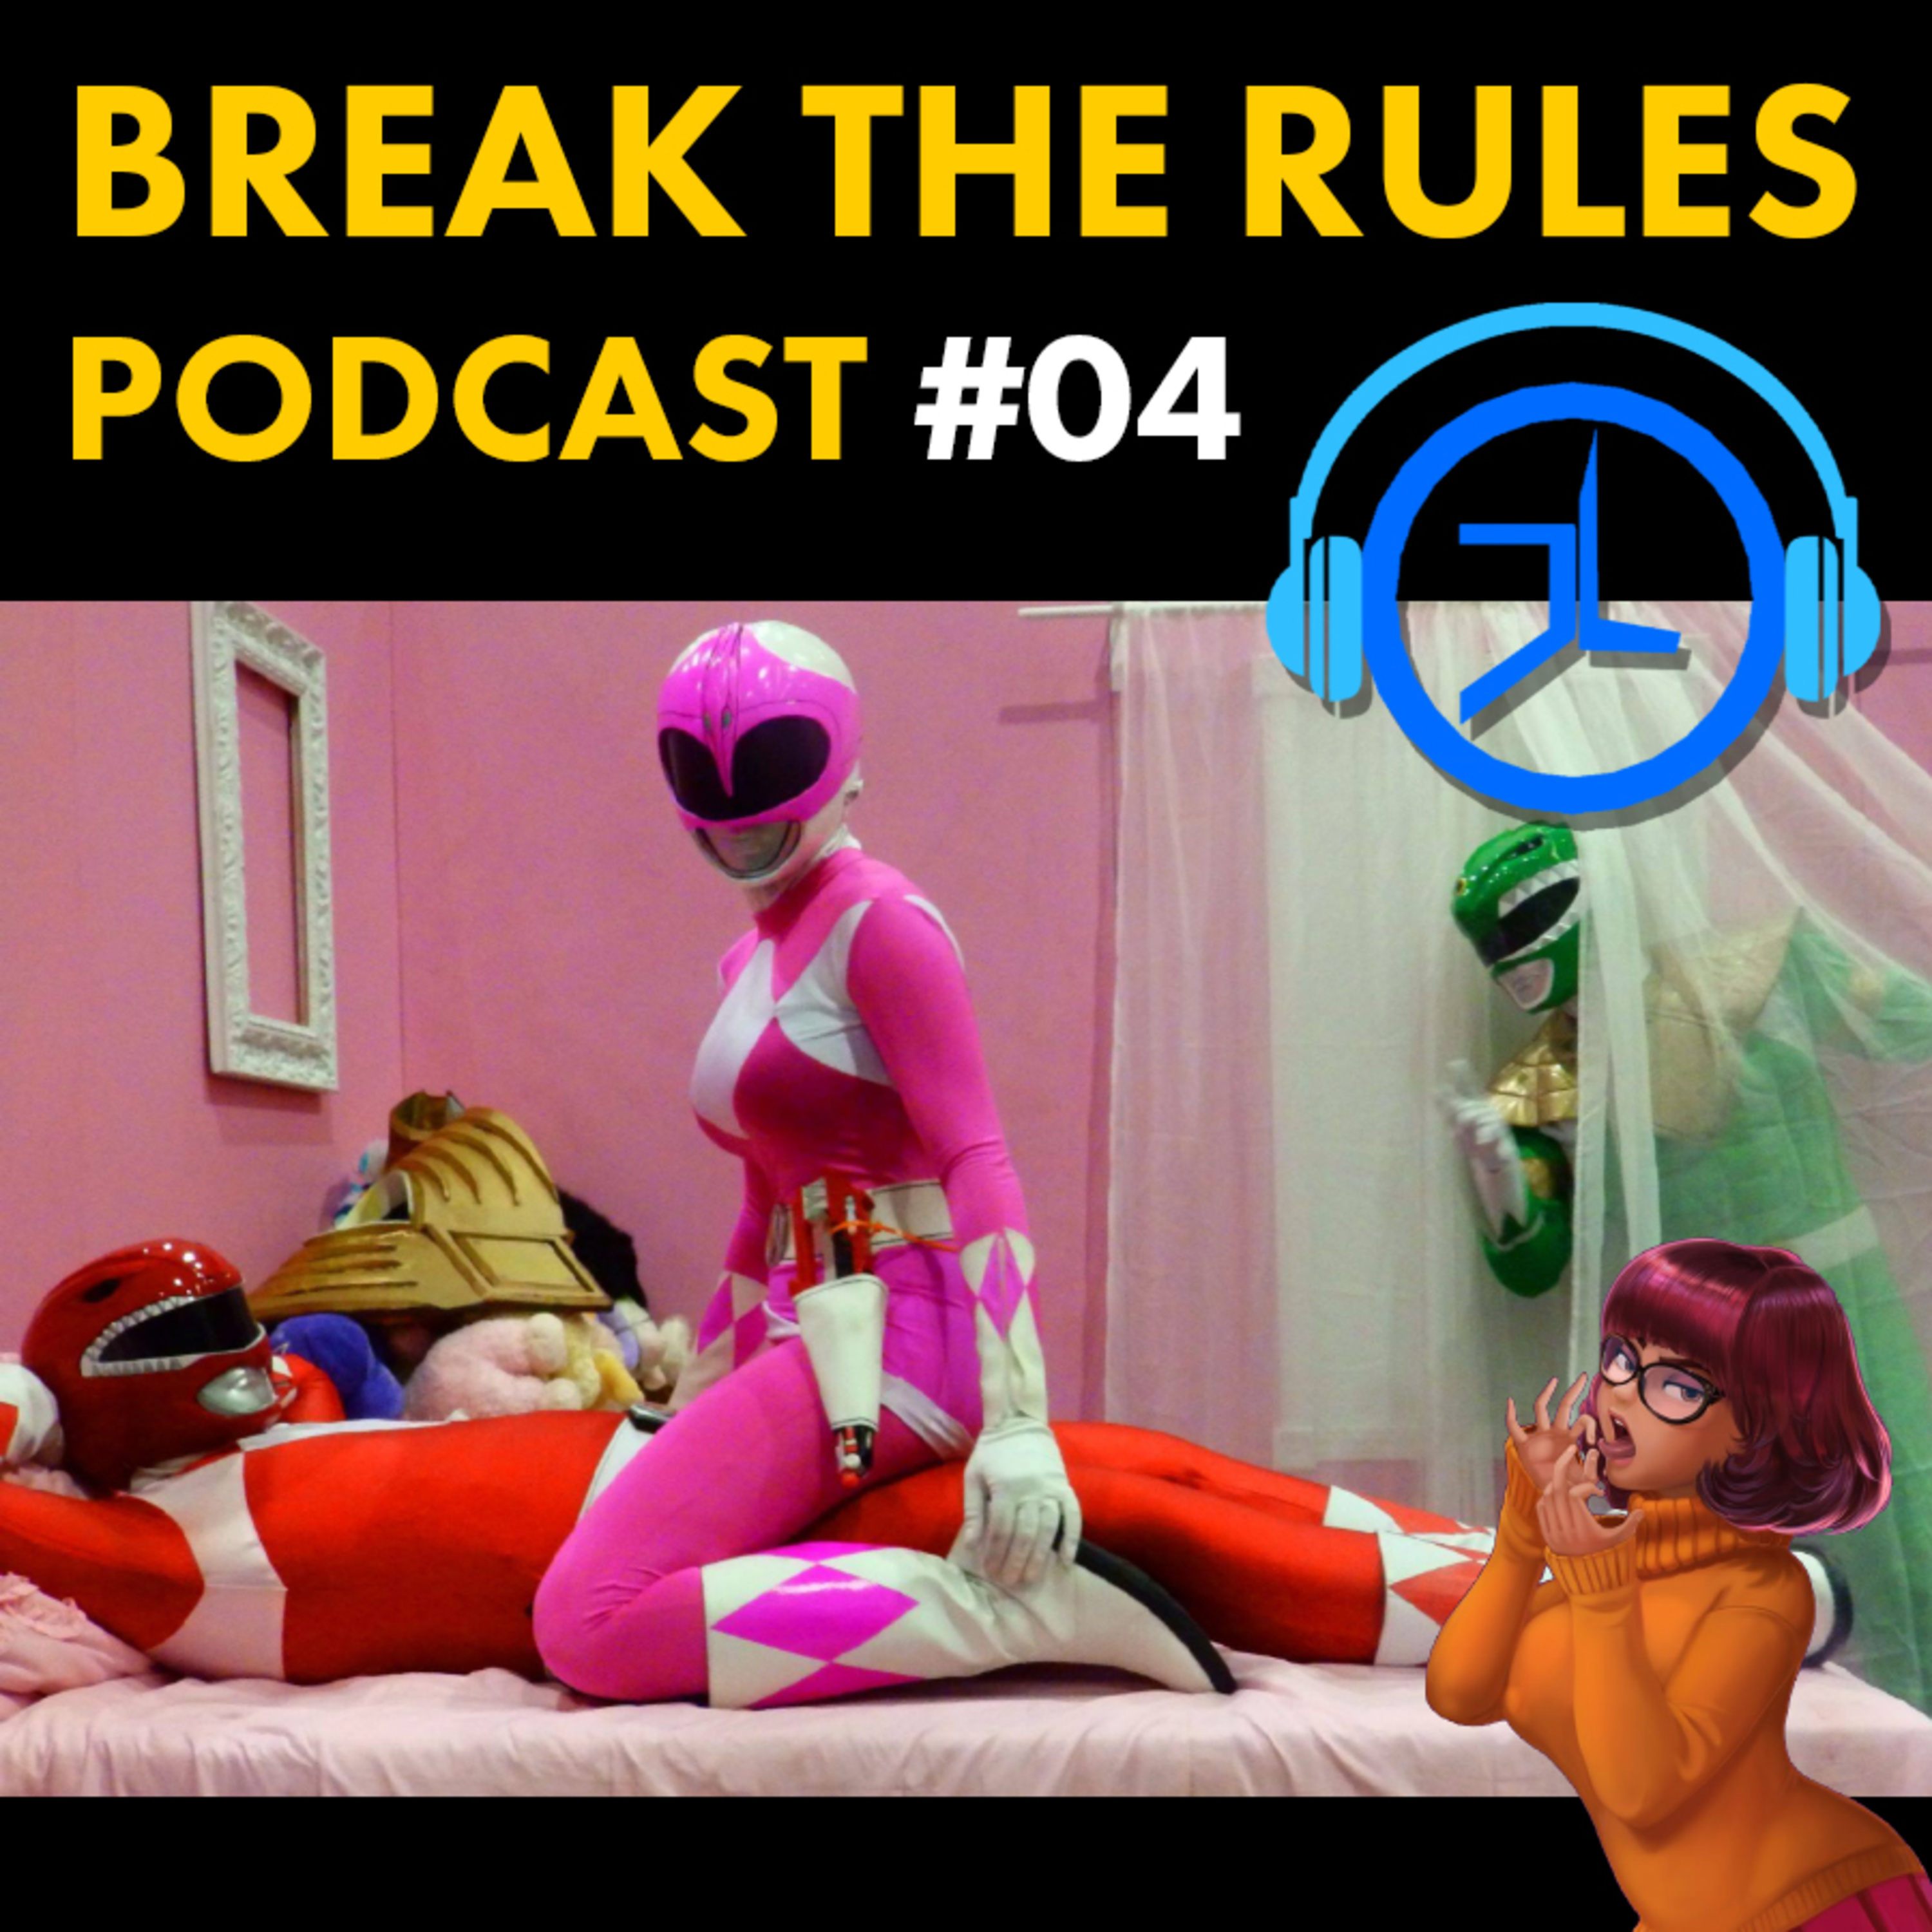 Artwork for podcast Break the Rules